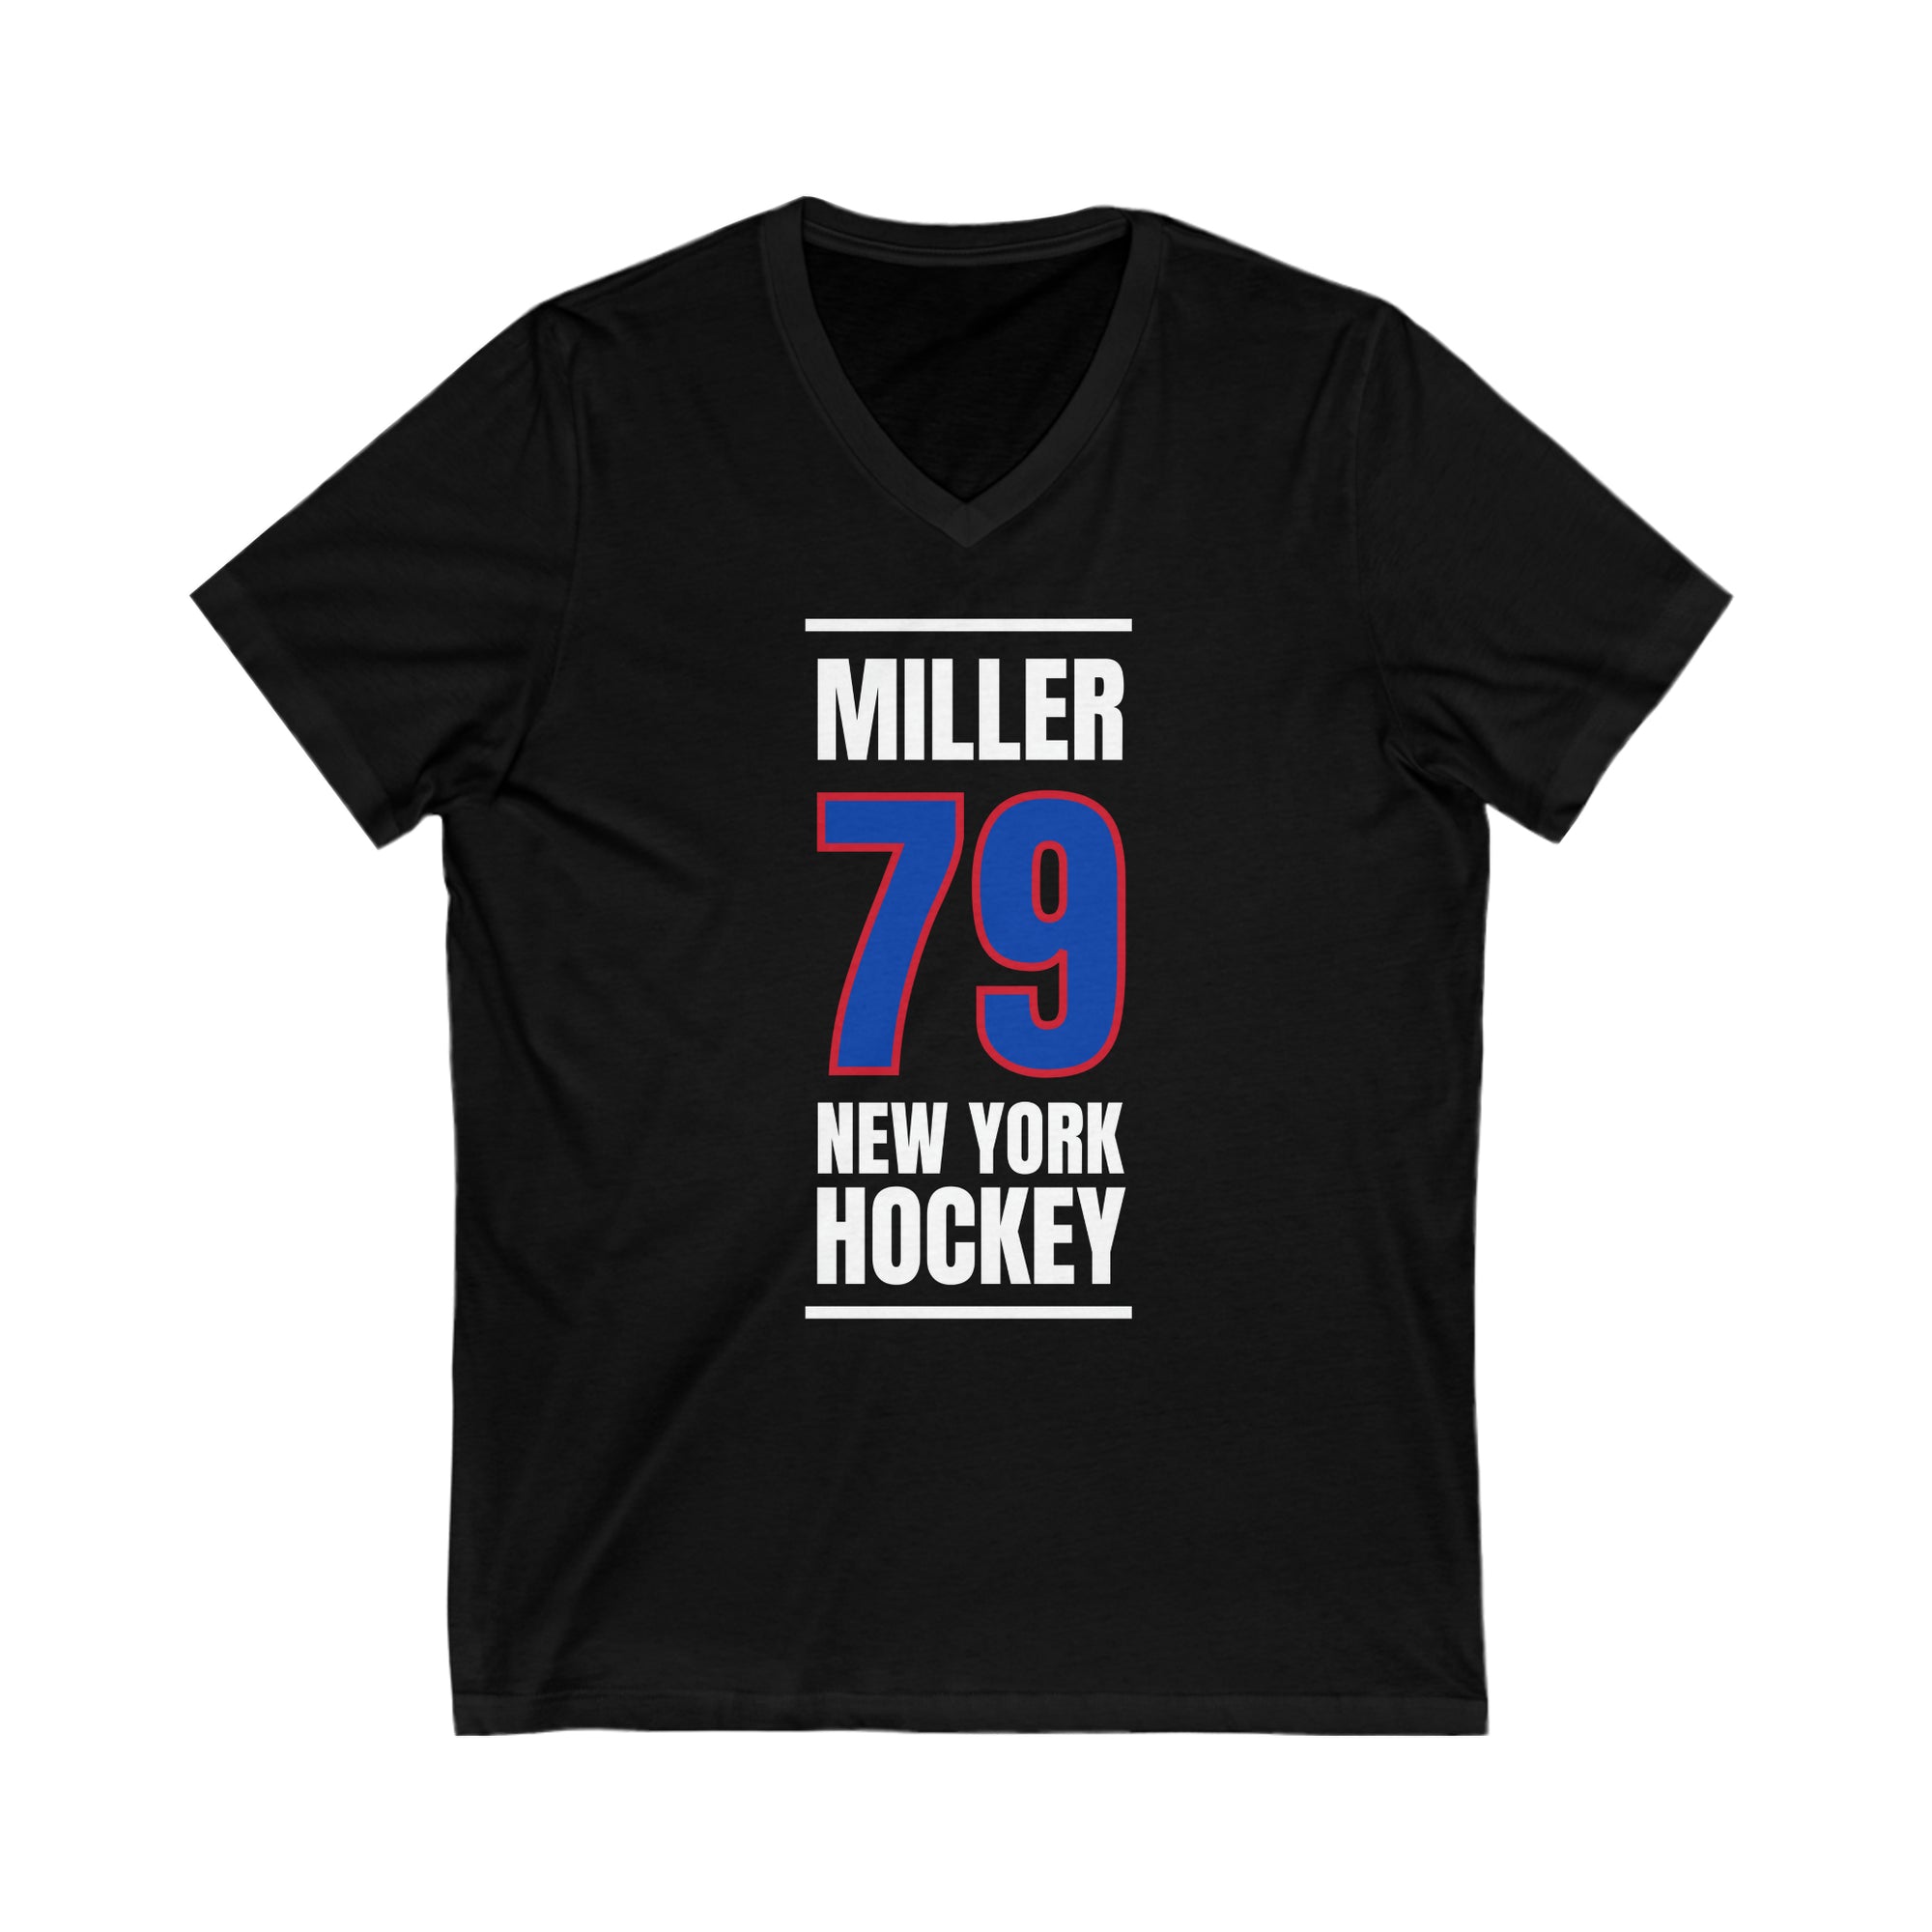 Miller 79 New York Hockey Royal Blue Vertical Design Unisex V-Neck Tee